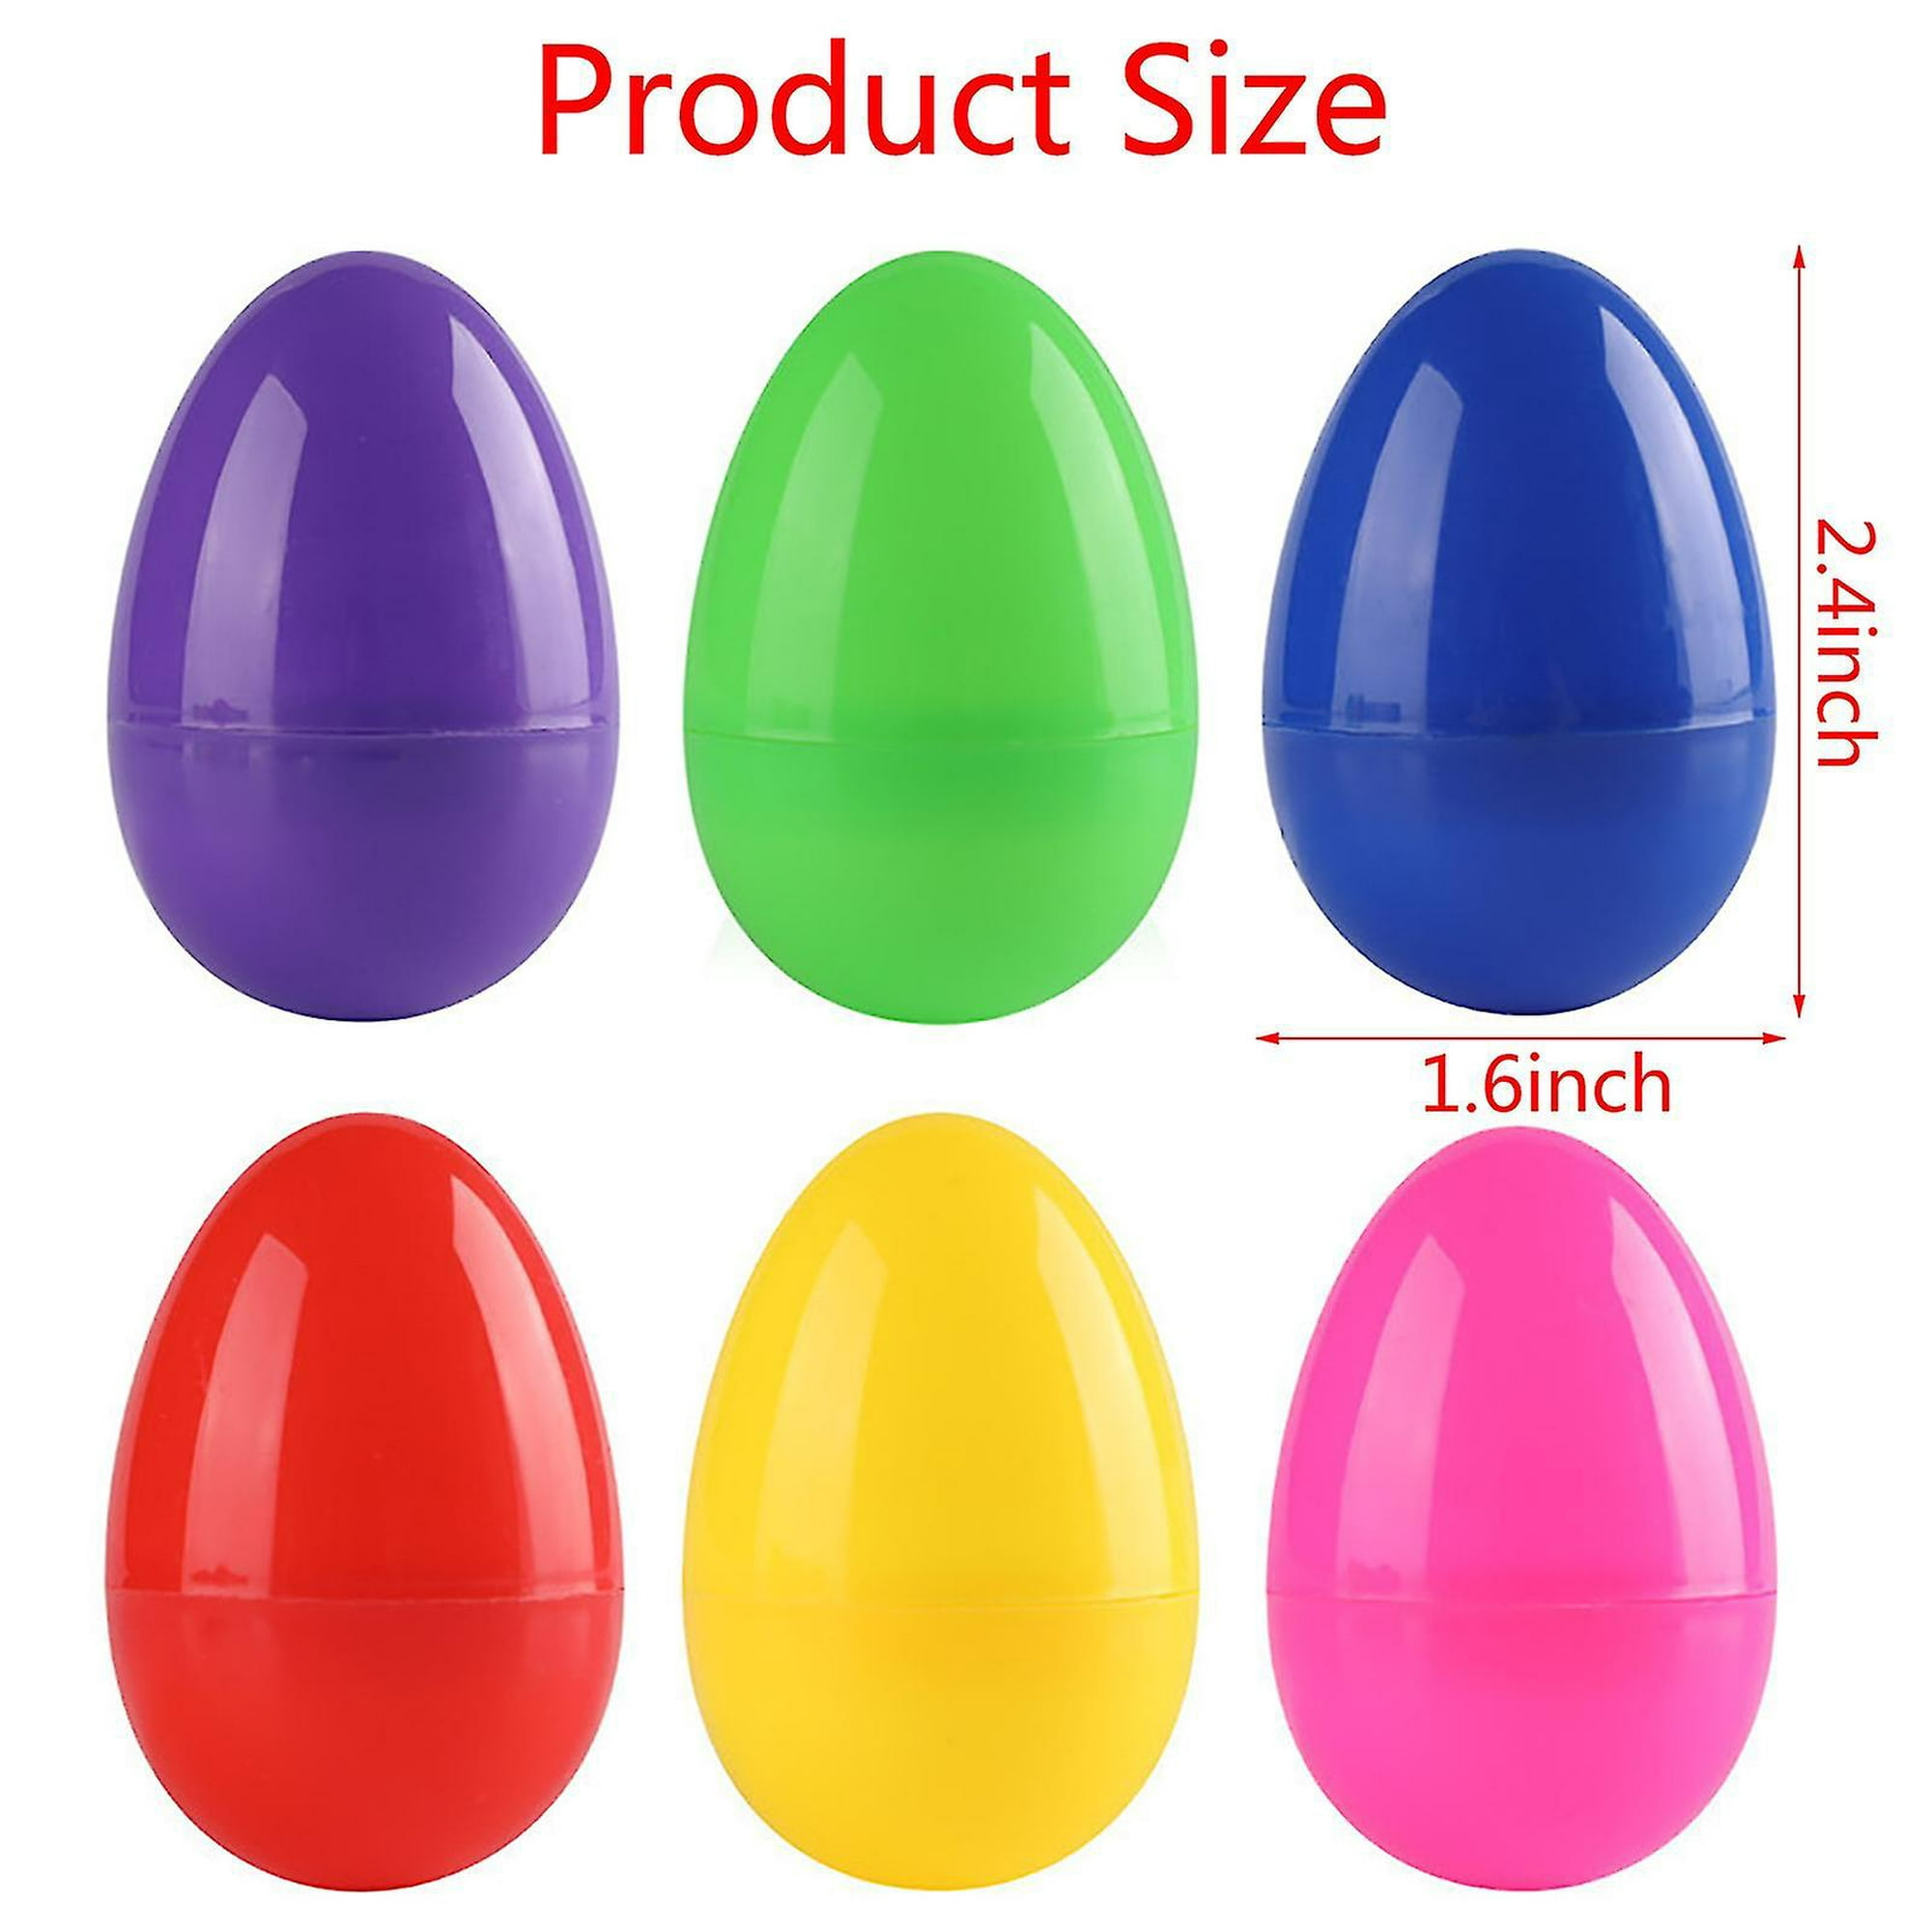 Huevos de plástico para manualidades, ideal Pascua, venta online.